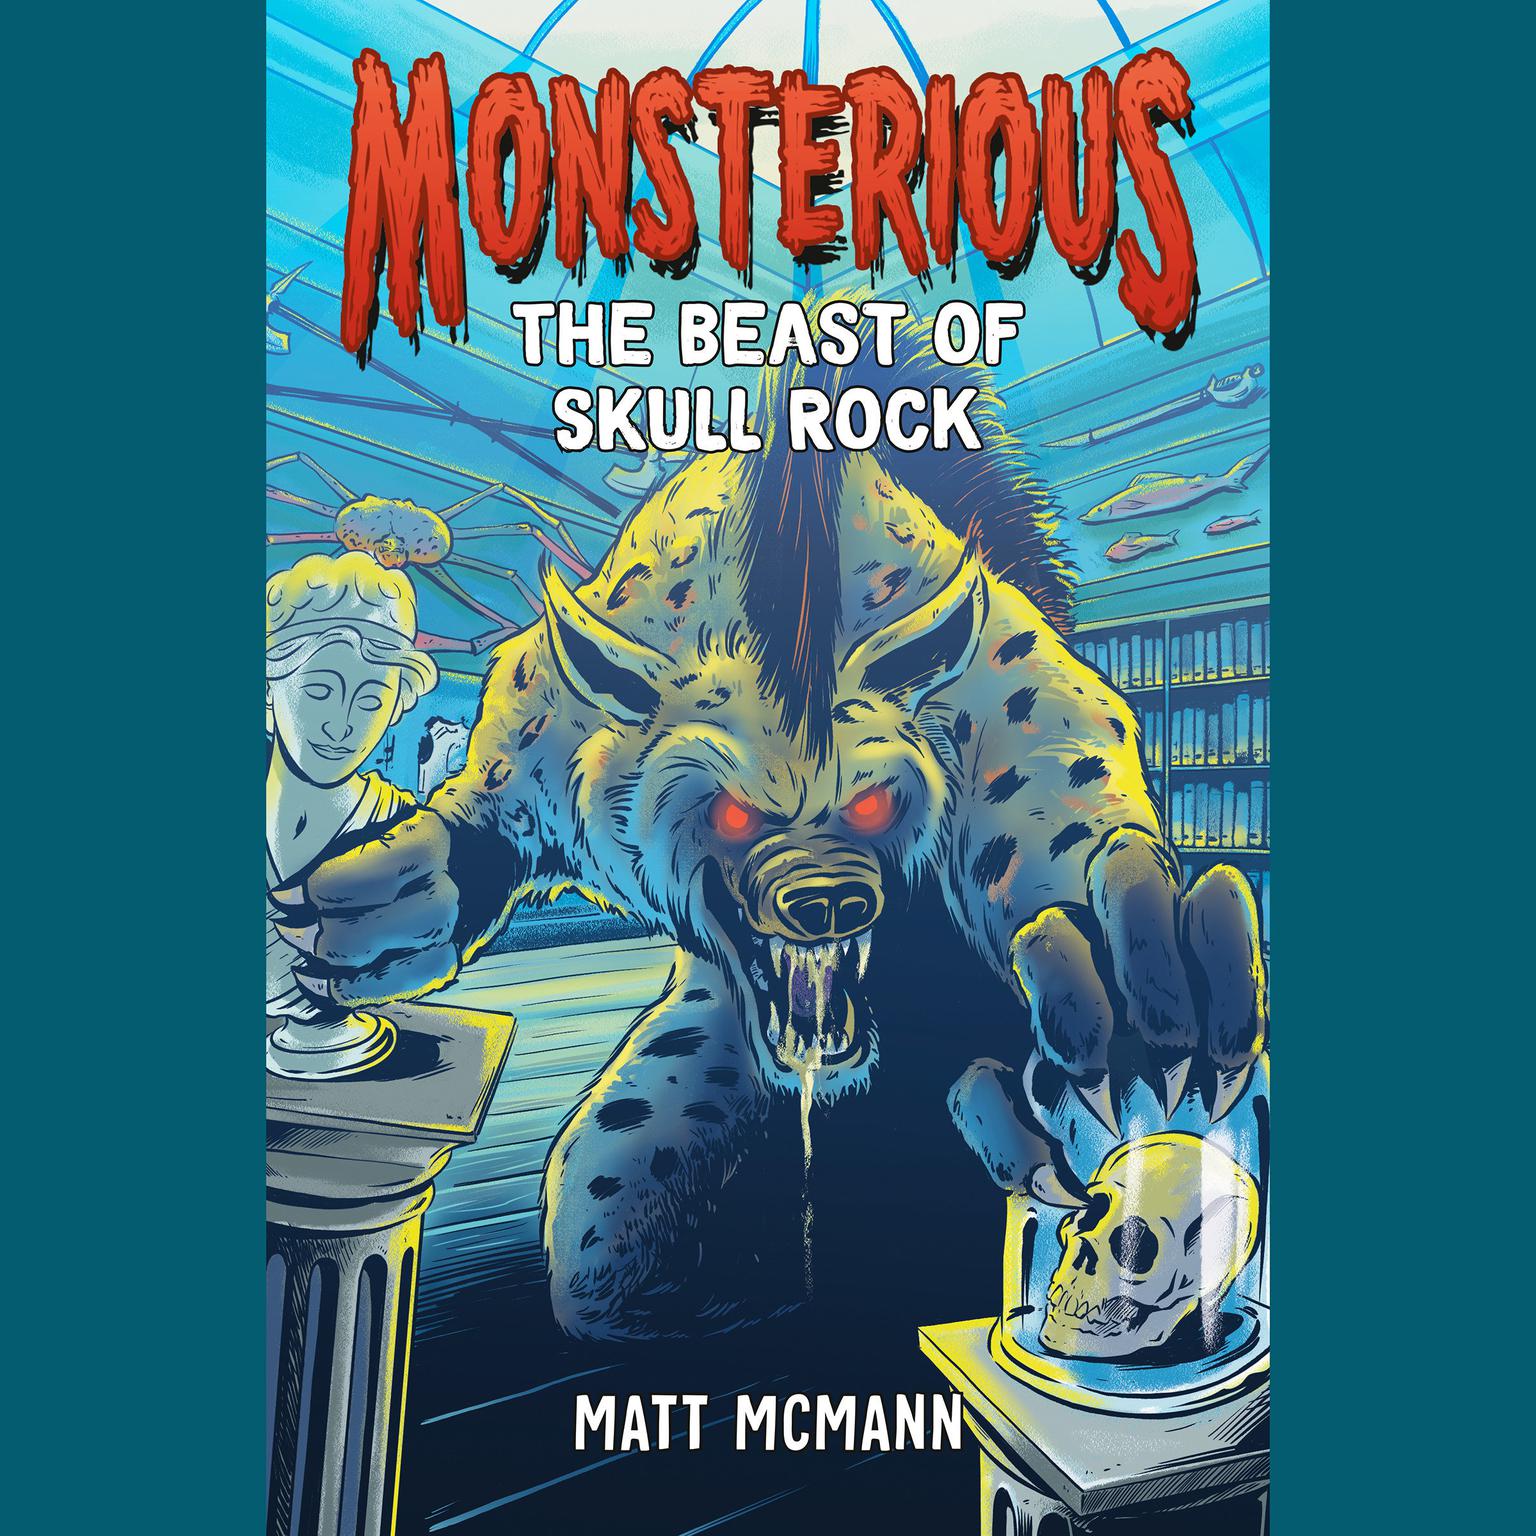 The Beast of Skull Rock (Monsterious, Book 4) Audiobook, by Matt McMann